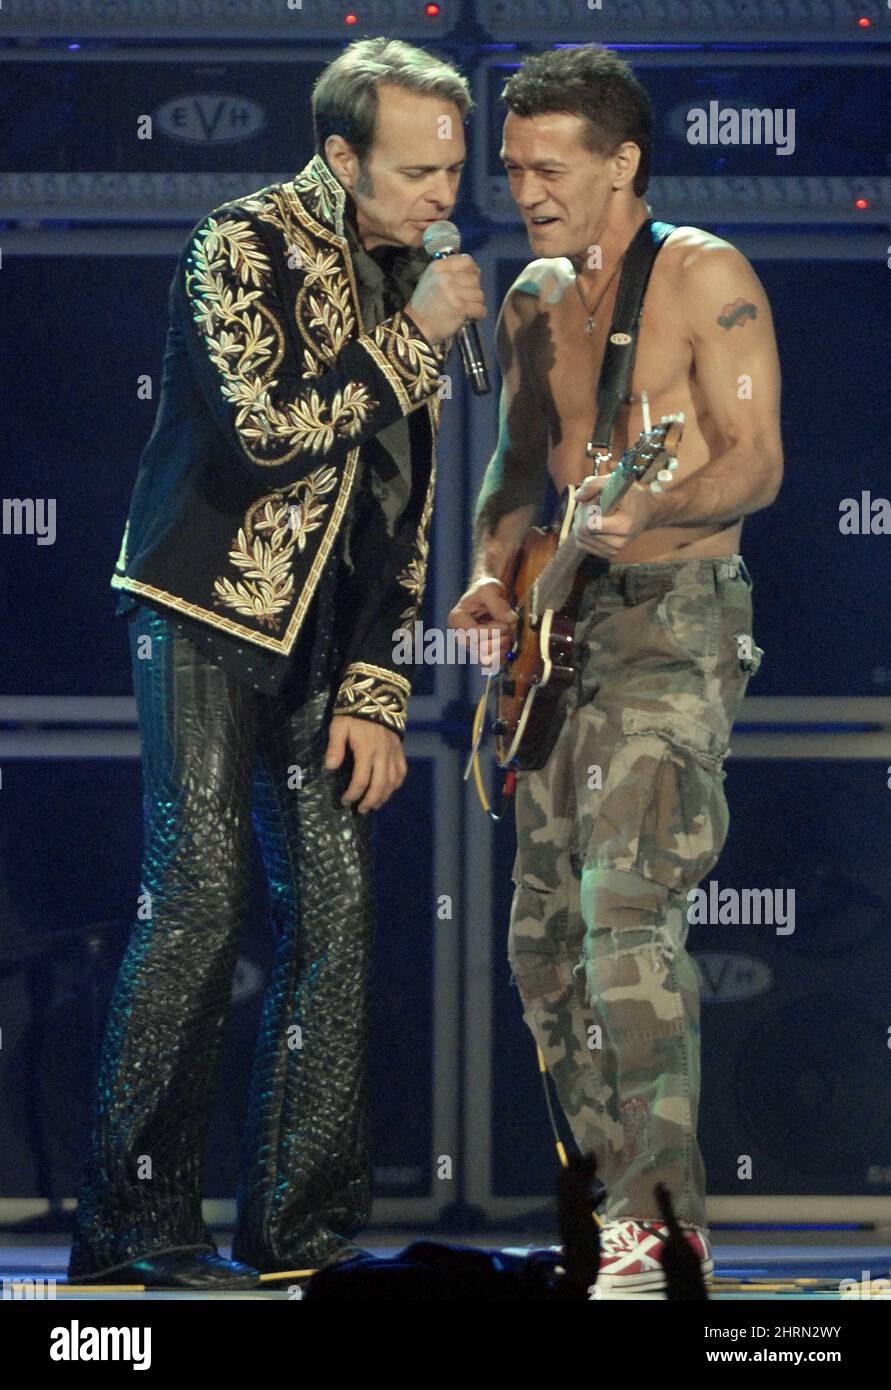 David Lee Roth, left, and Eddie Van Halen of Van Halen perform in Toronto, Sunday, Oct. 7, 2007. (AP Photo/The Canadian Press, Aaron Harris) Stock Photo